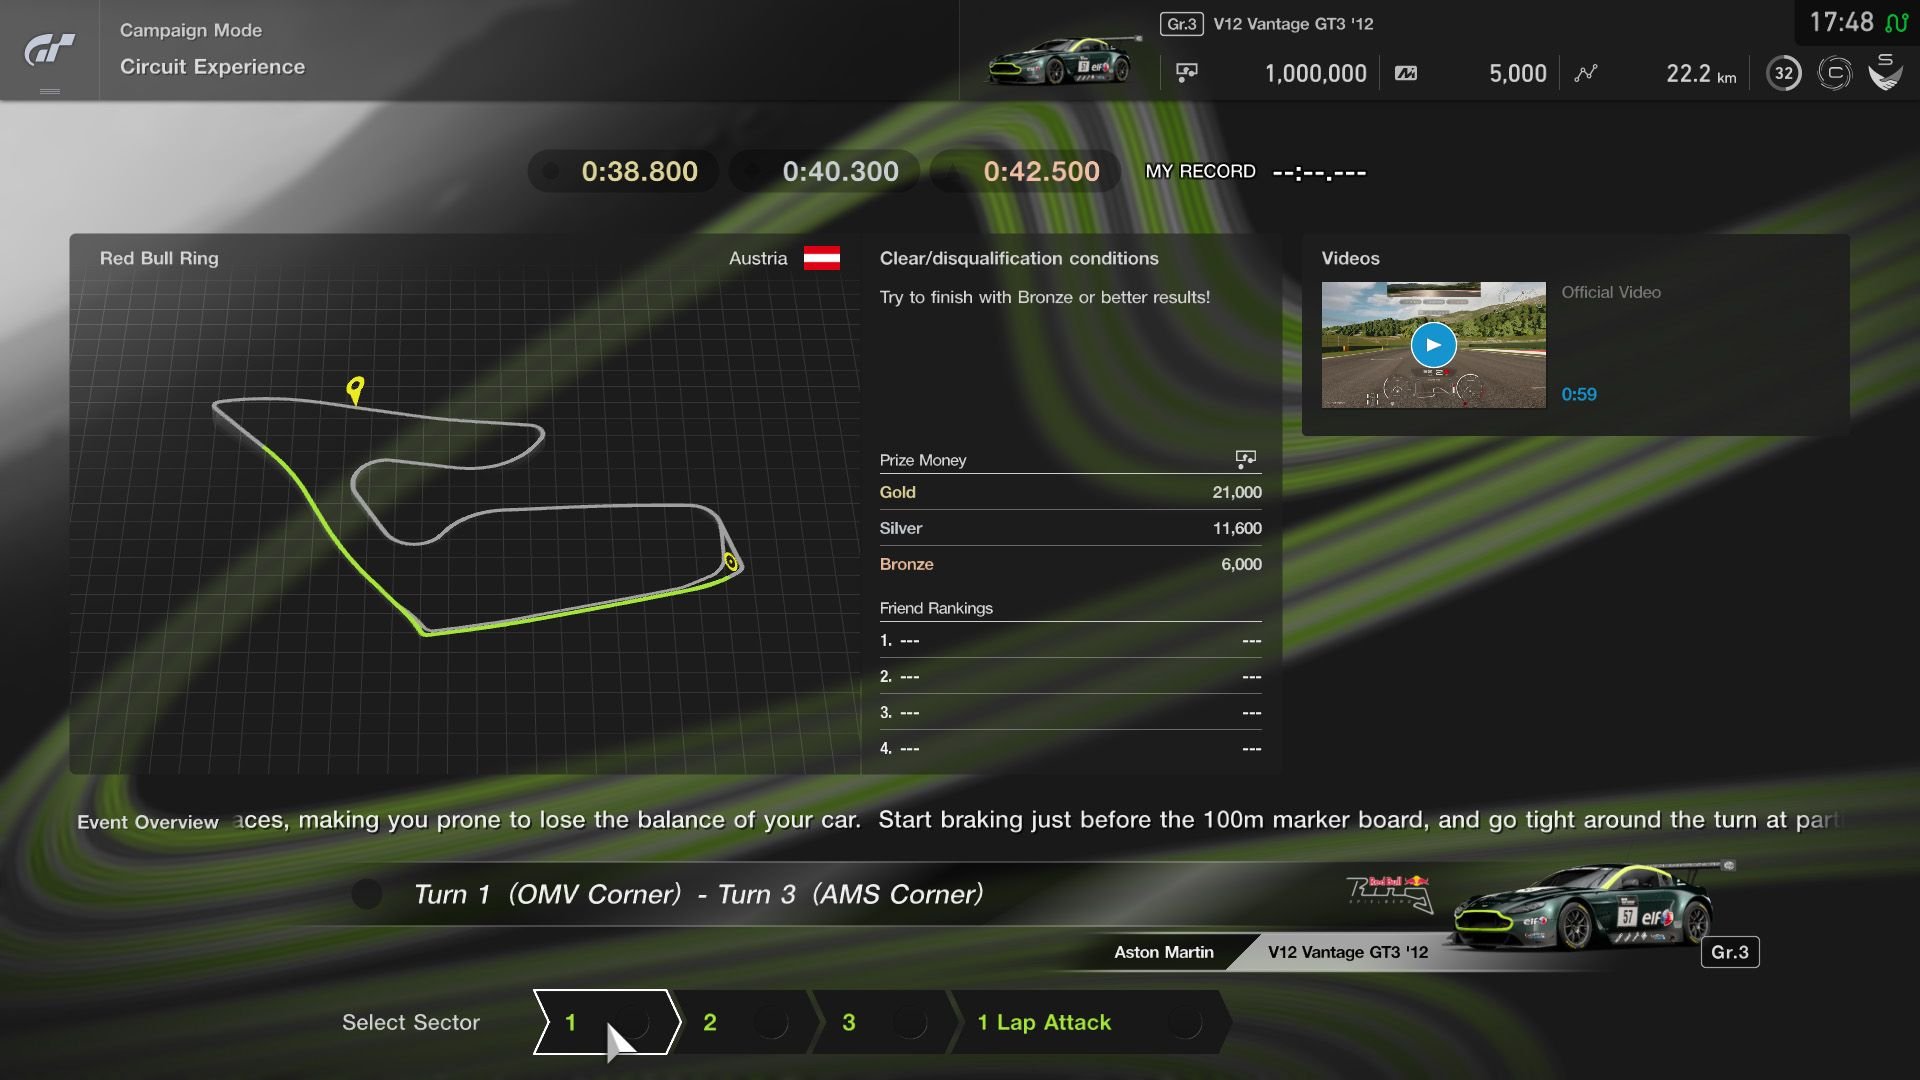 眼見最大競爭對手 Xbox 獨佔賽車遊戲《Forza Horizon 4》即將推出，Gran Turismo 一點也不敢怠慢，SIEH 宣佈 PS4 獨佔遊戲《Gran Turismo Sport》又有更新檔案，收錄了 9 款新車、富士高速賽道、「Sport 模式」新機能和「GT League」全新活動。